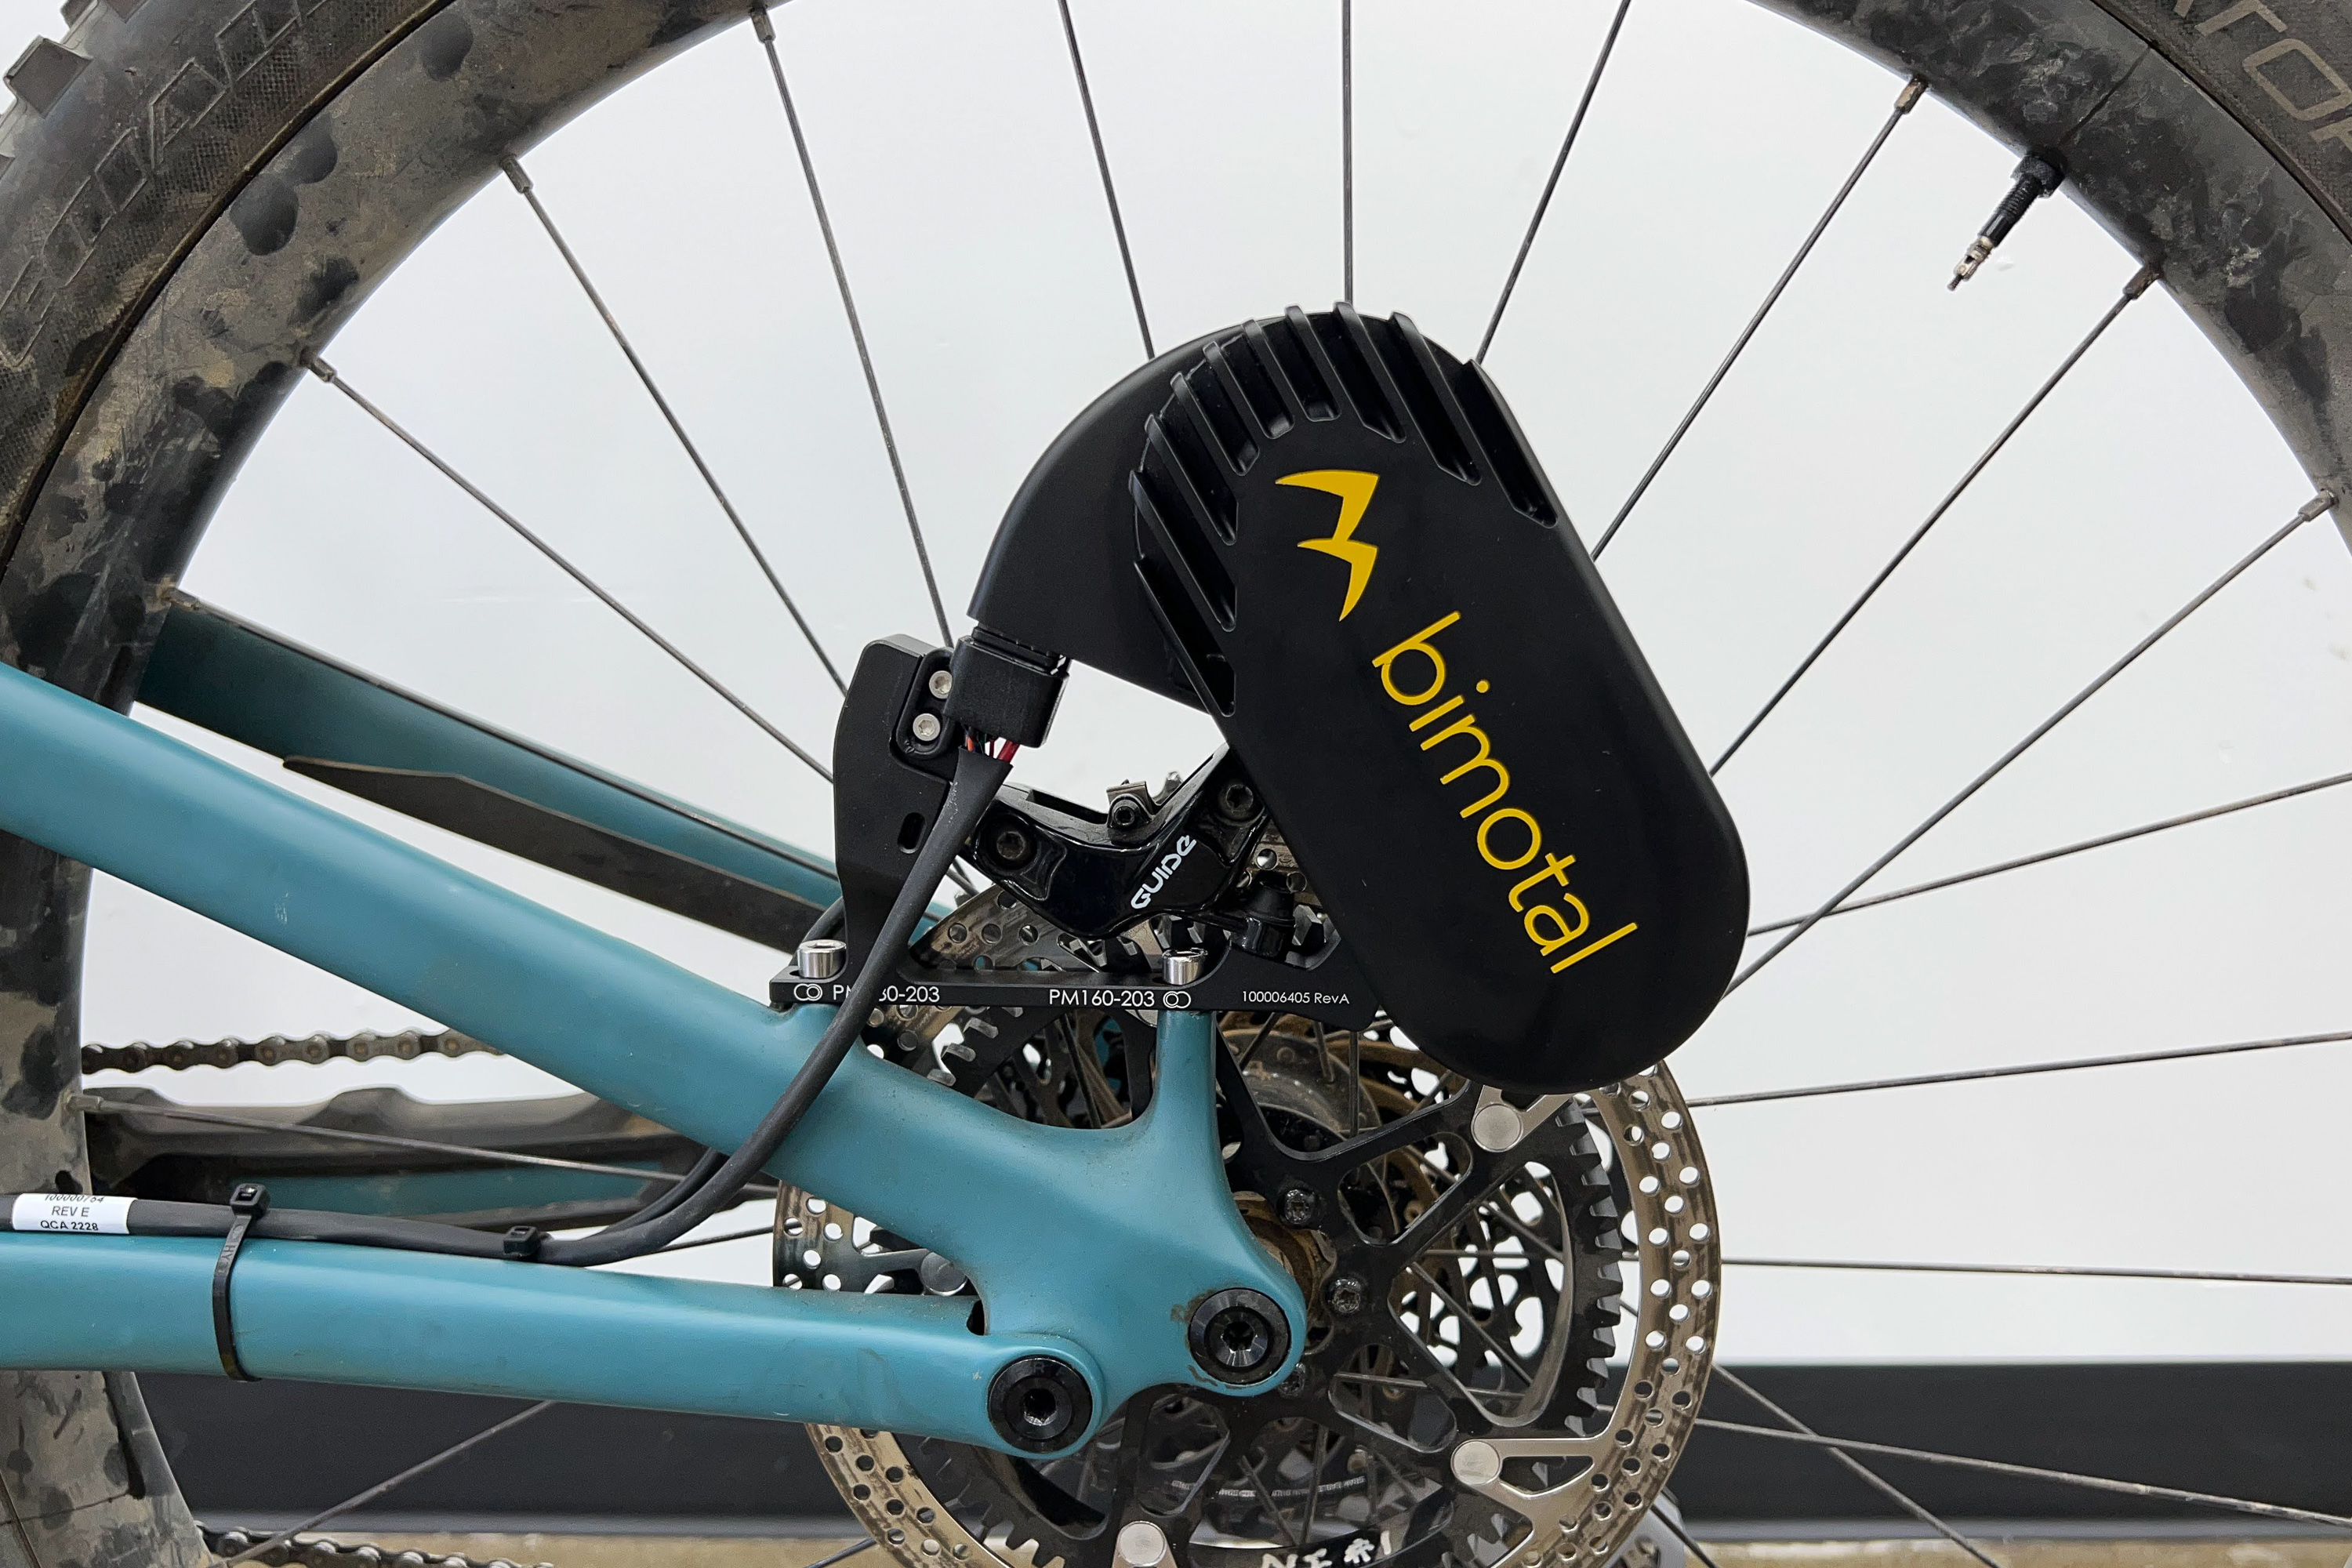 Bimotal Elevate: Zusatzmotor verwandelt Fahrräder zu E-Bikes